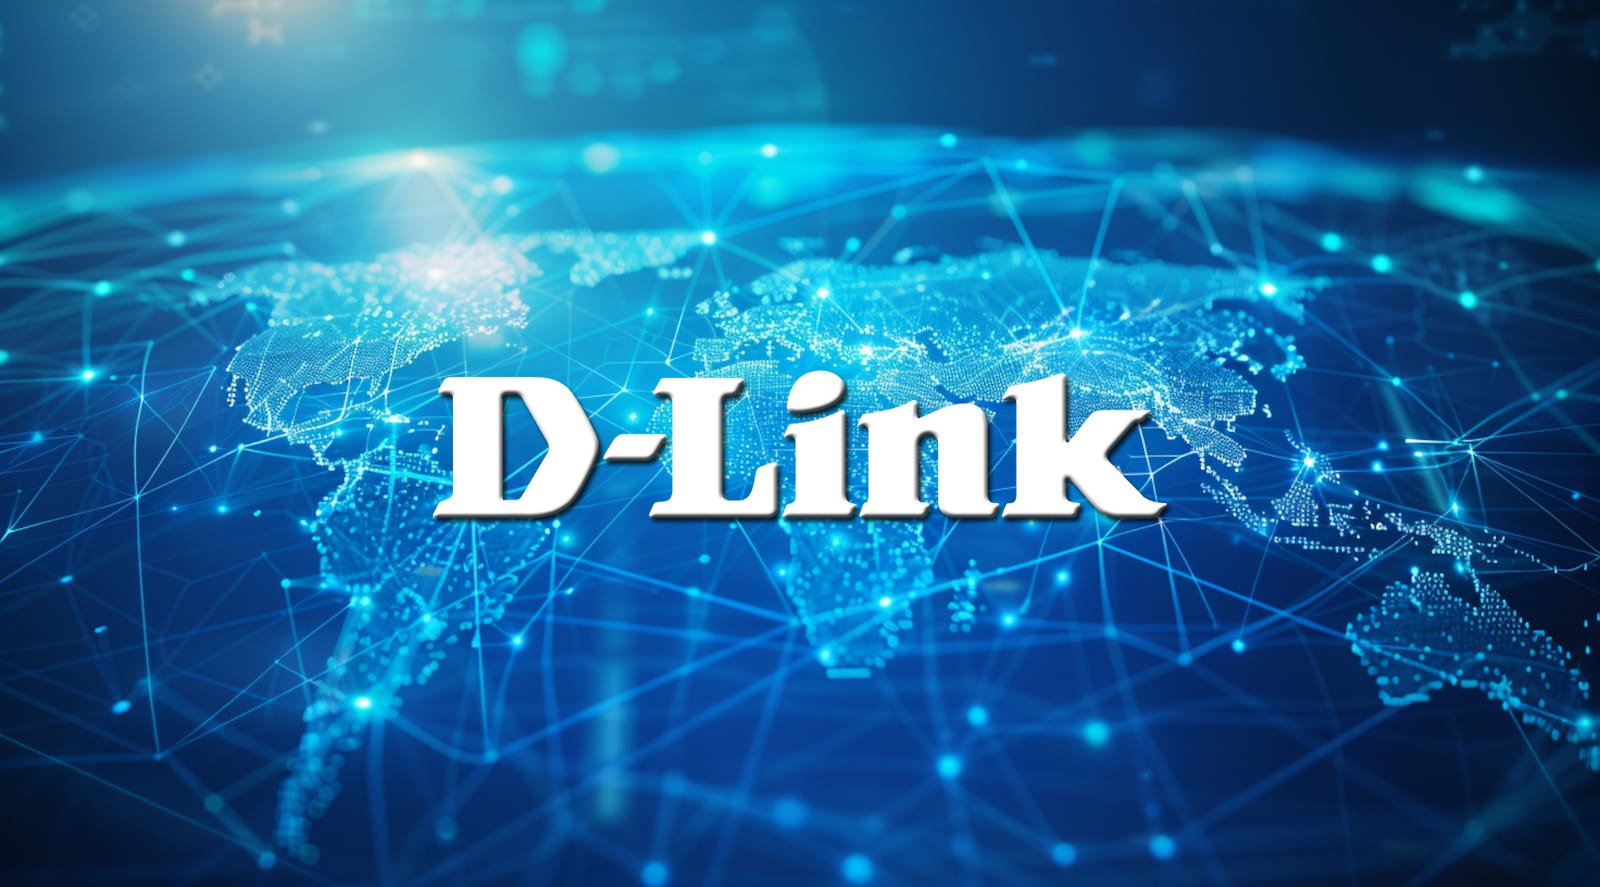 DLINK on a digital world